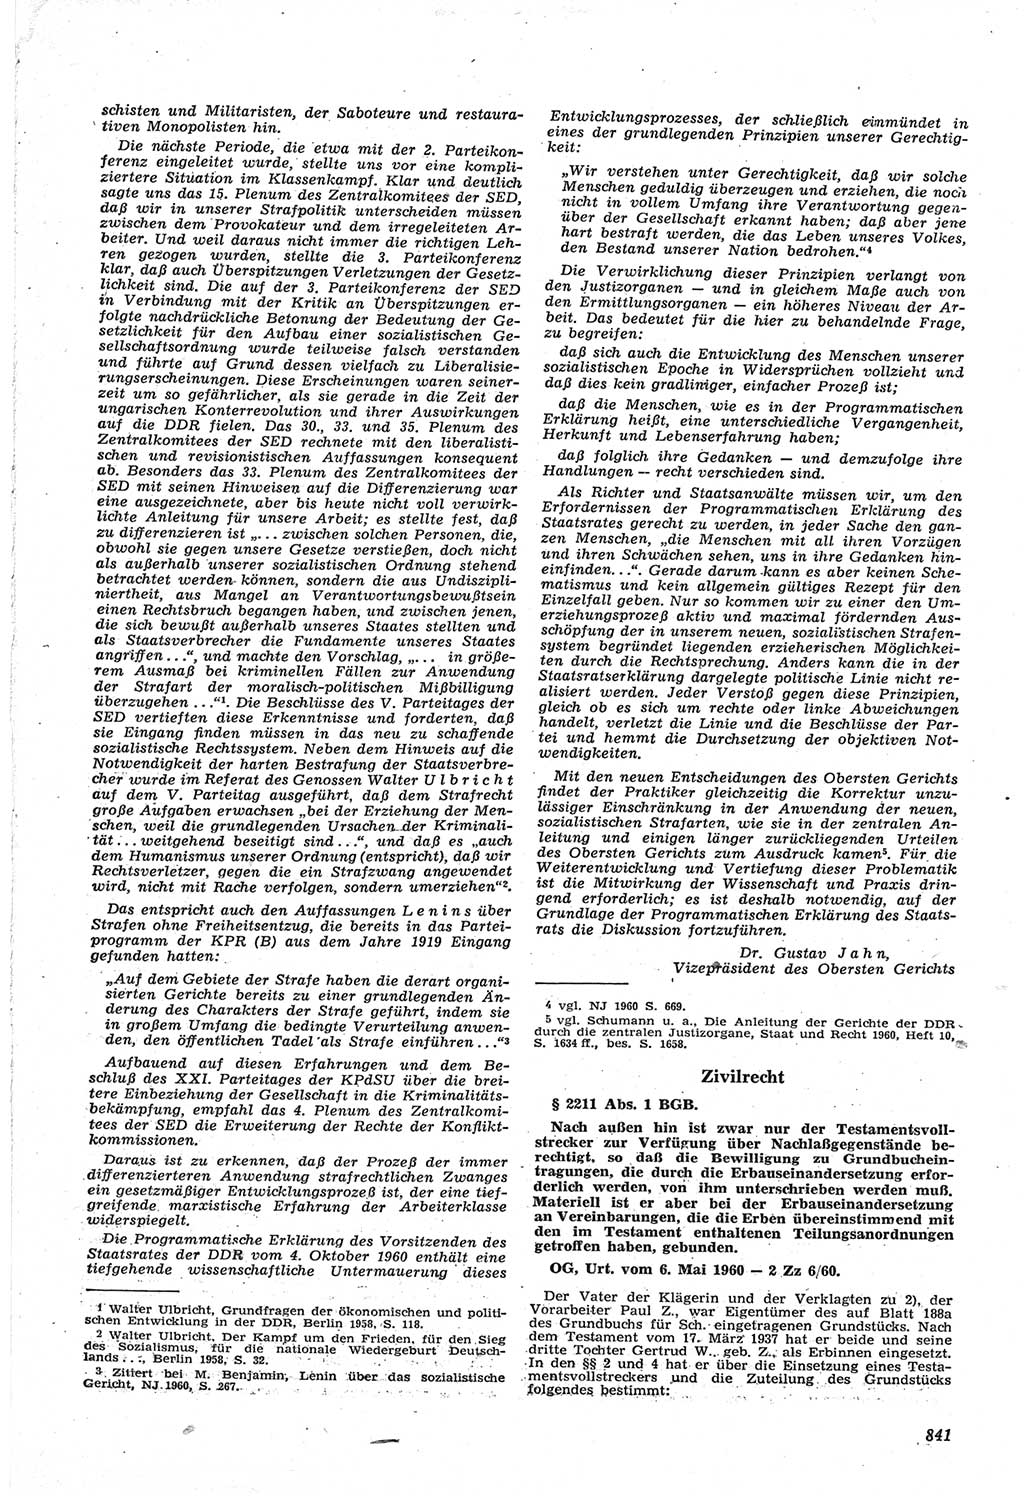 Neue Justiz (NJ), Zeitschrift für Recht und Rechtswissenschaft [Deutsche Demokratische Republik (DDR)], 14. Jahrgang 1960, Seite 841 (NJ DDR 1960, S. 841)